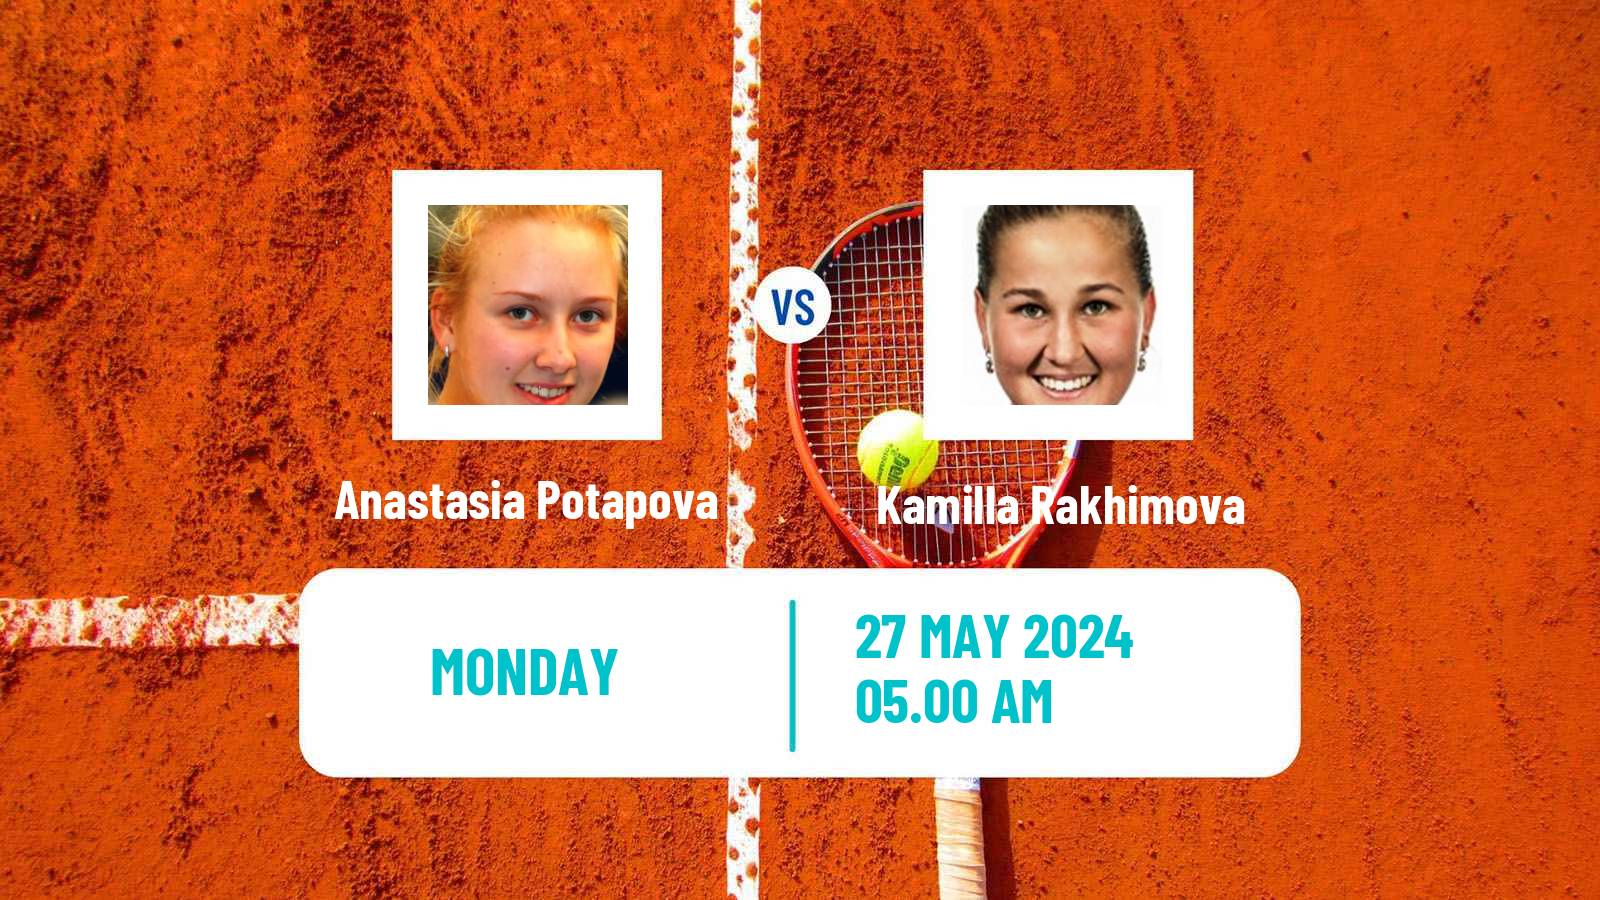 Tennis WTA Roland Garros Anastasia Potapova - Kamilla Rakhimova